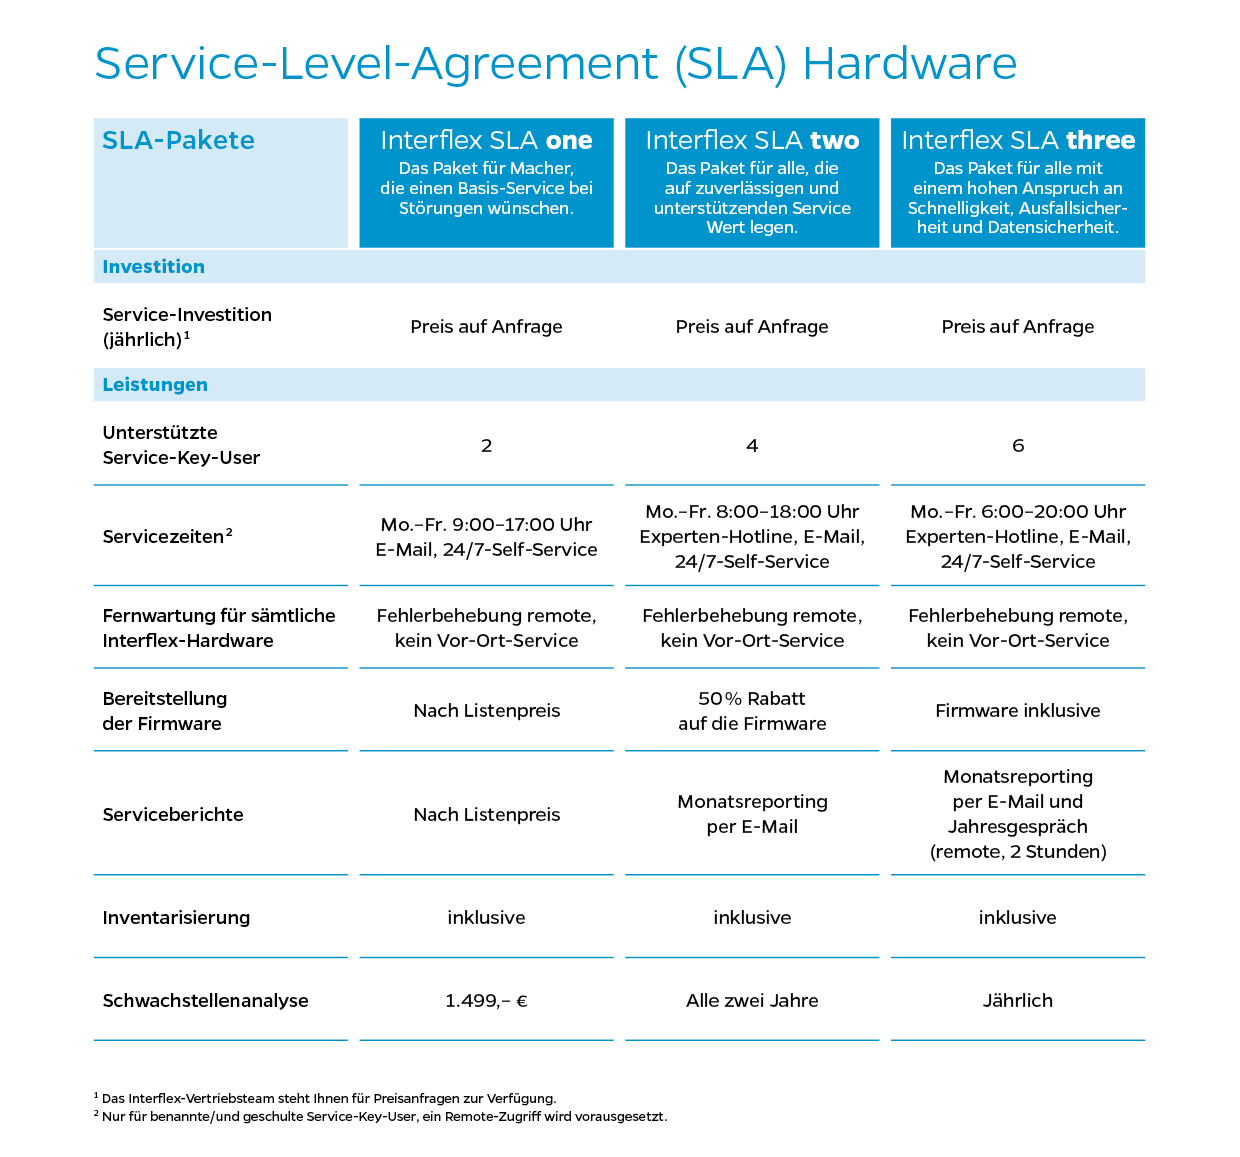 Übersicht über Service-Level-Agreement (SLA) für Hardware von Interflex.